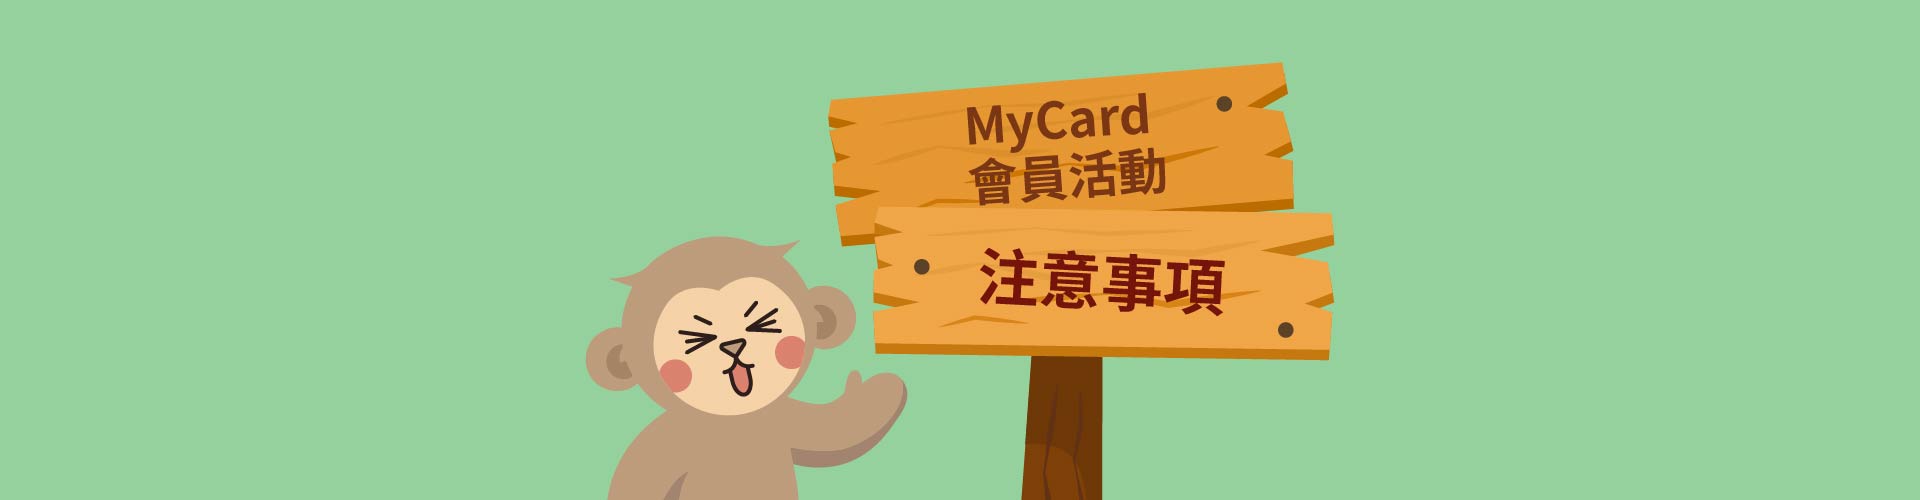 MyCard會員活動注意事項